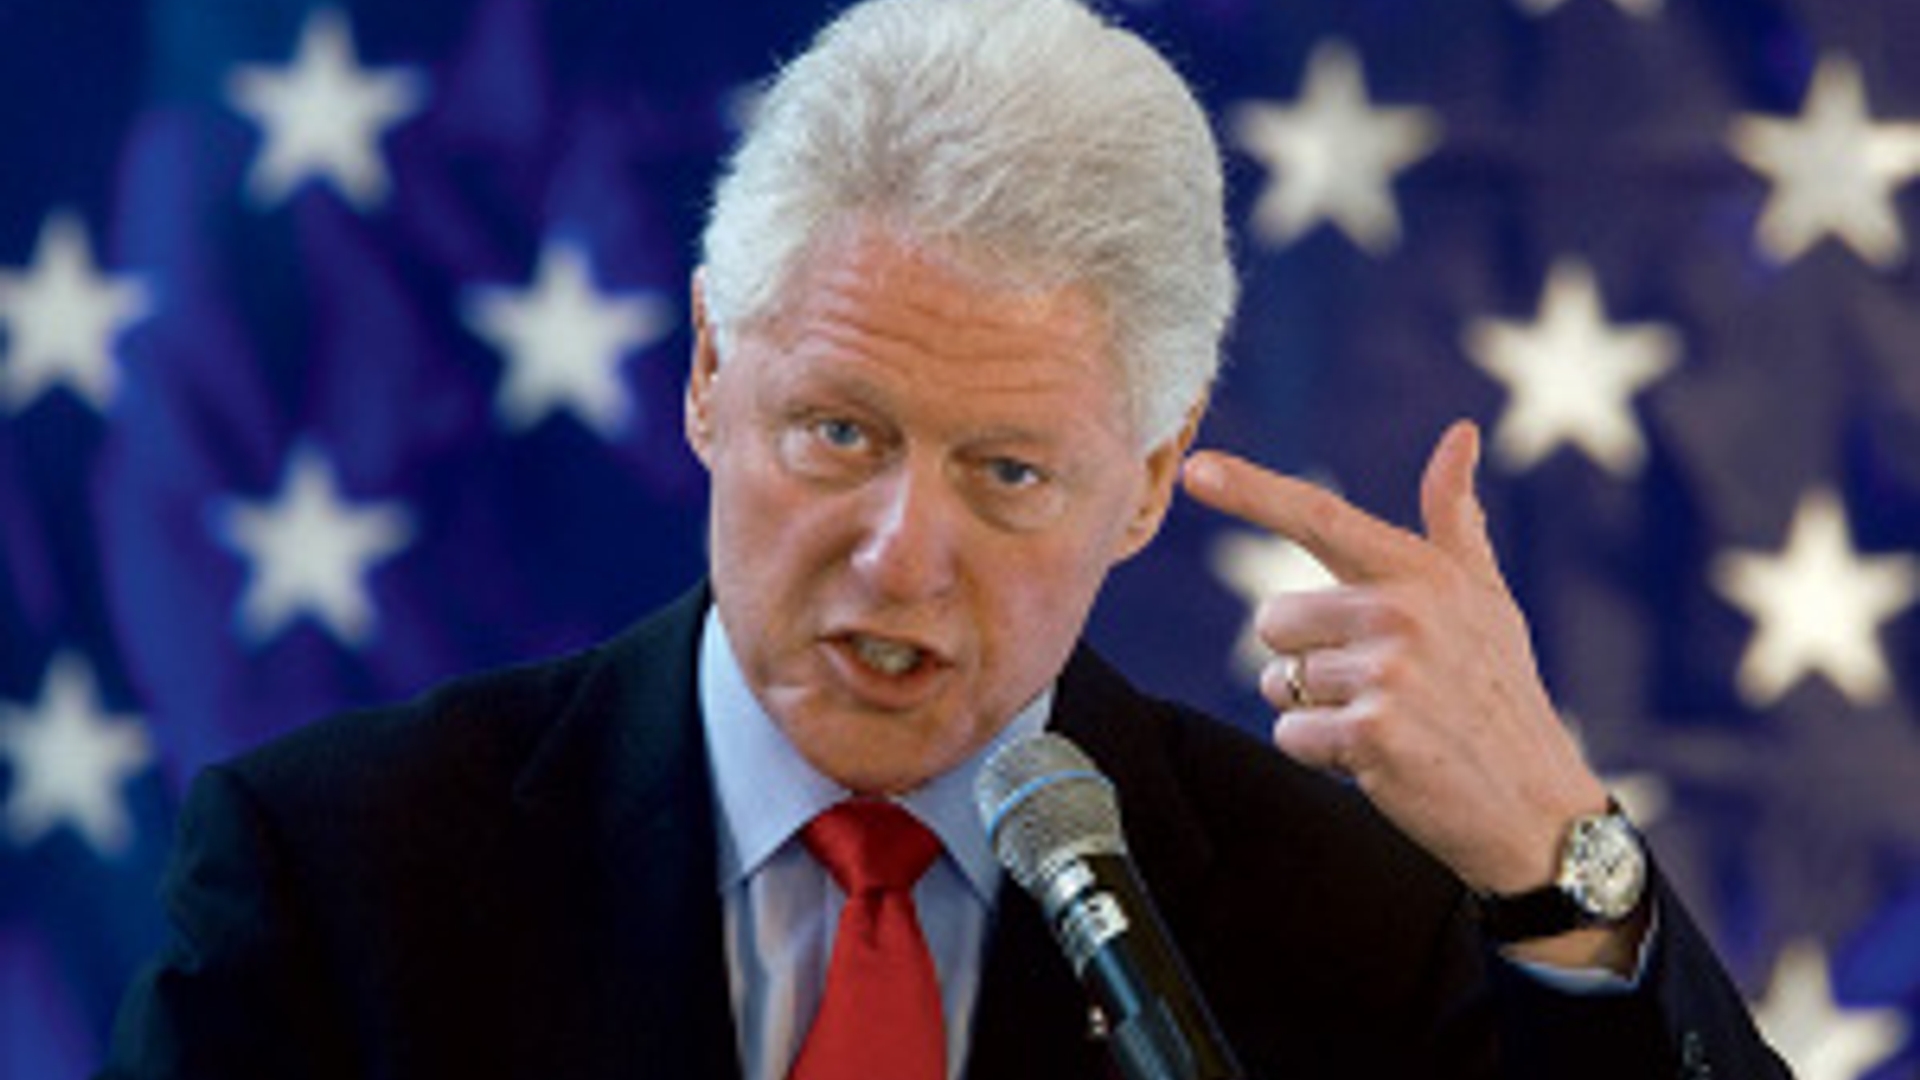 Bill-Clinton-speech-300px.jpg